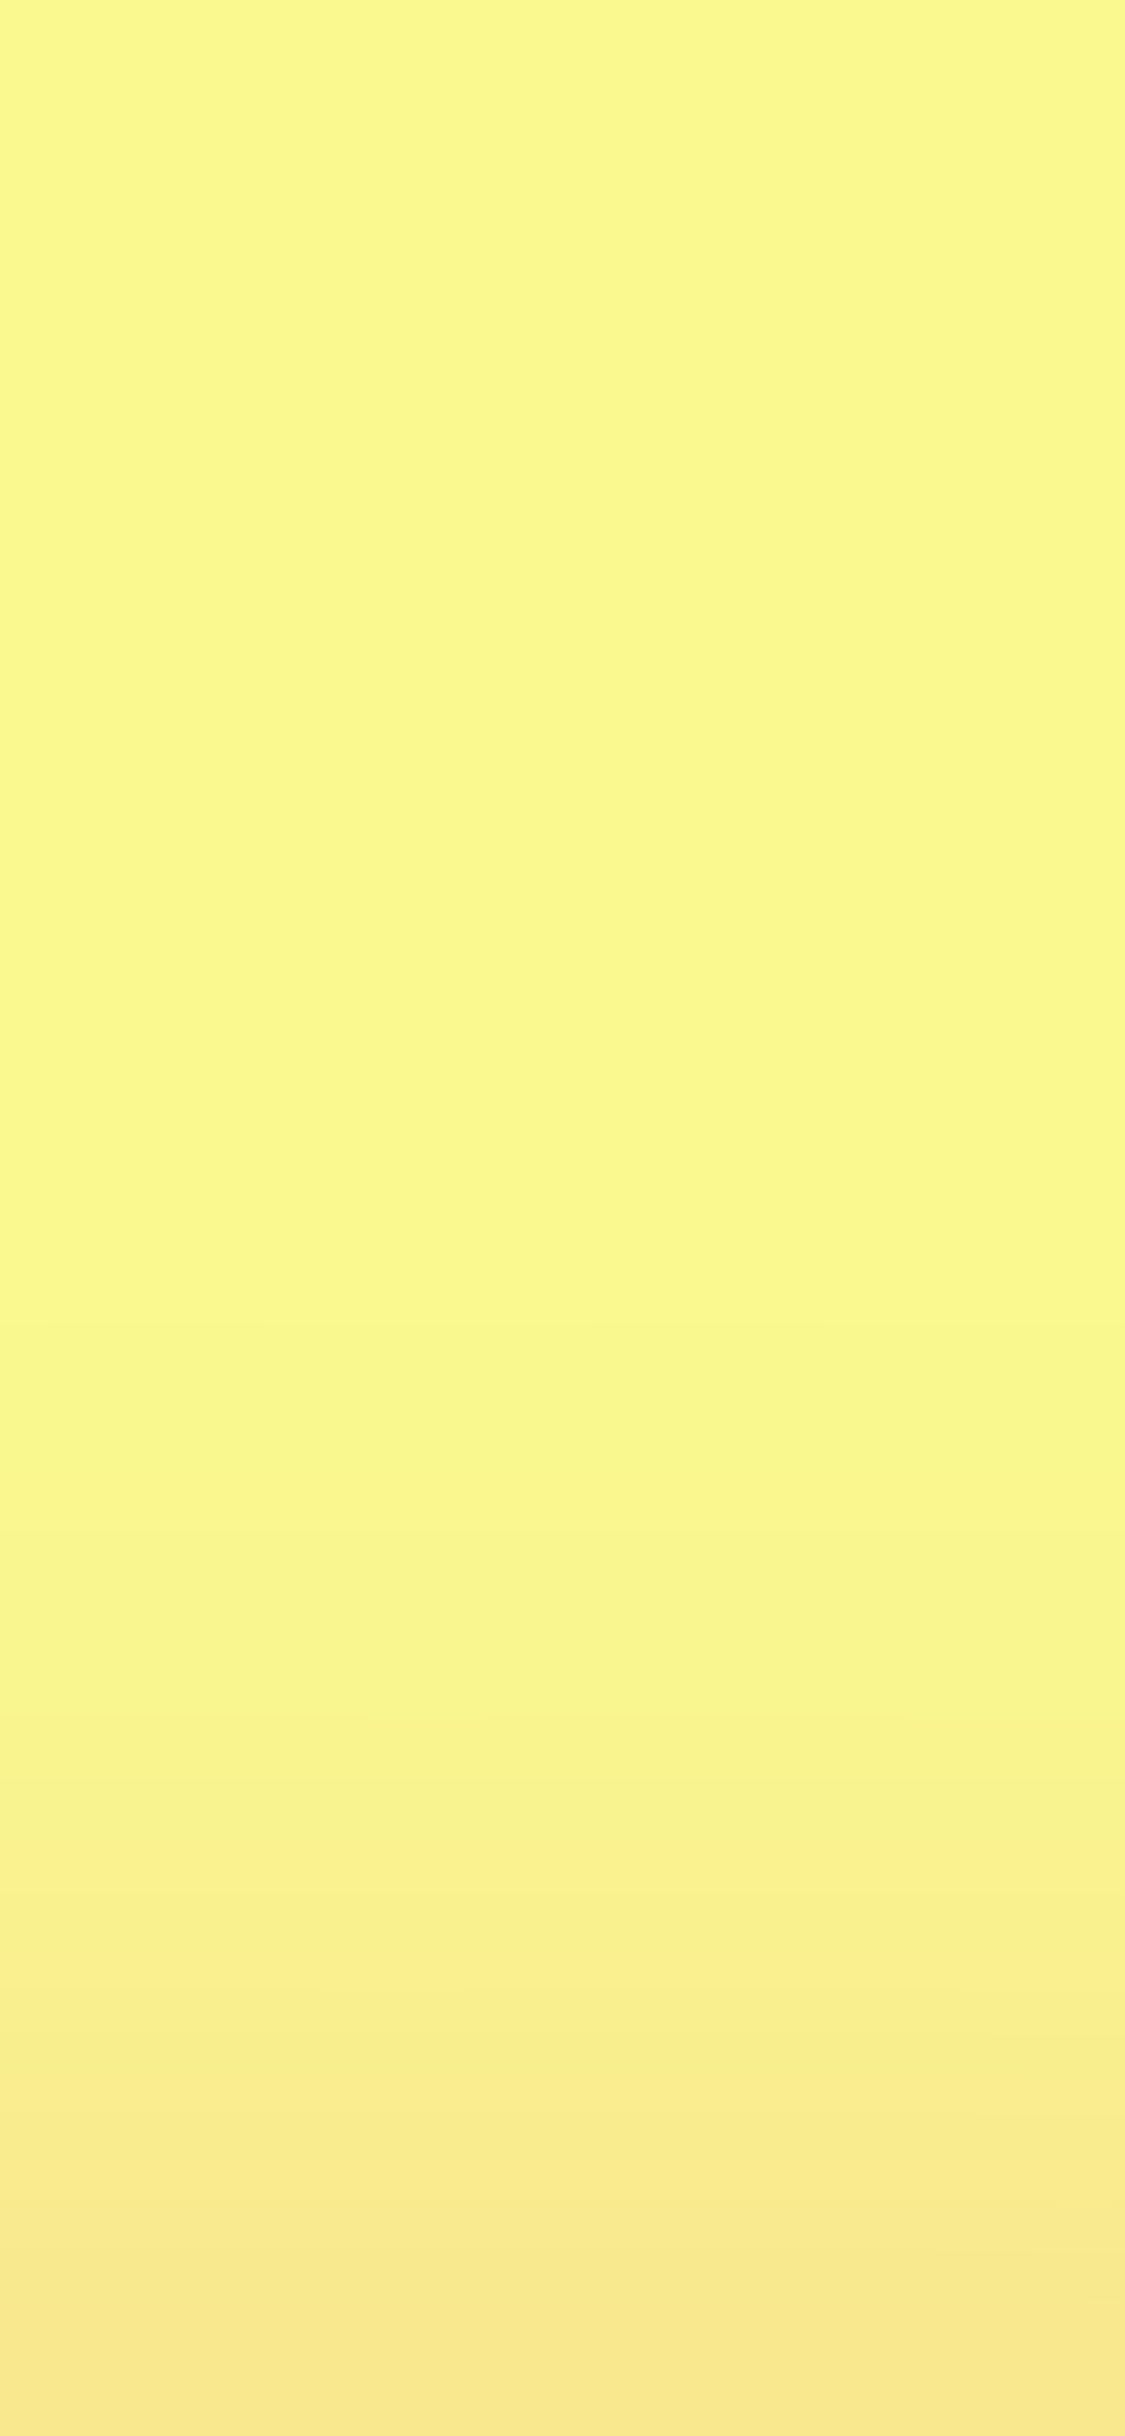 بک گراند از رنگ زرد لیمویی مخصوص گوشی موبایل